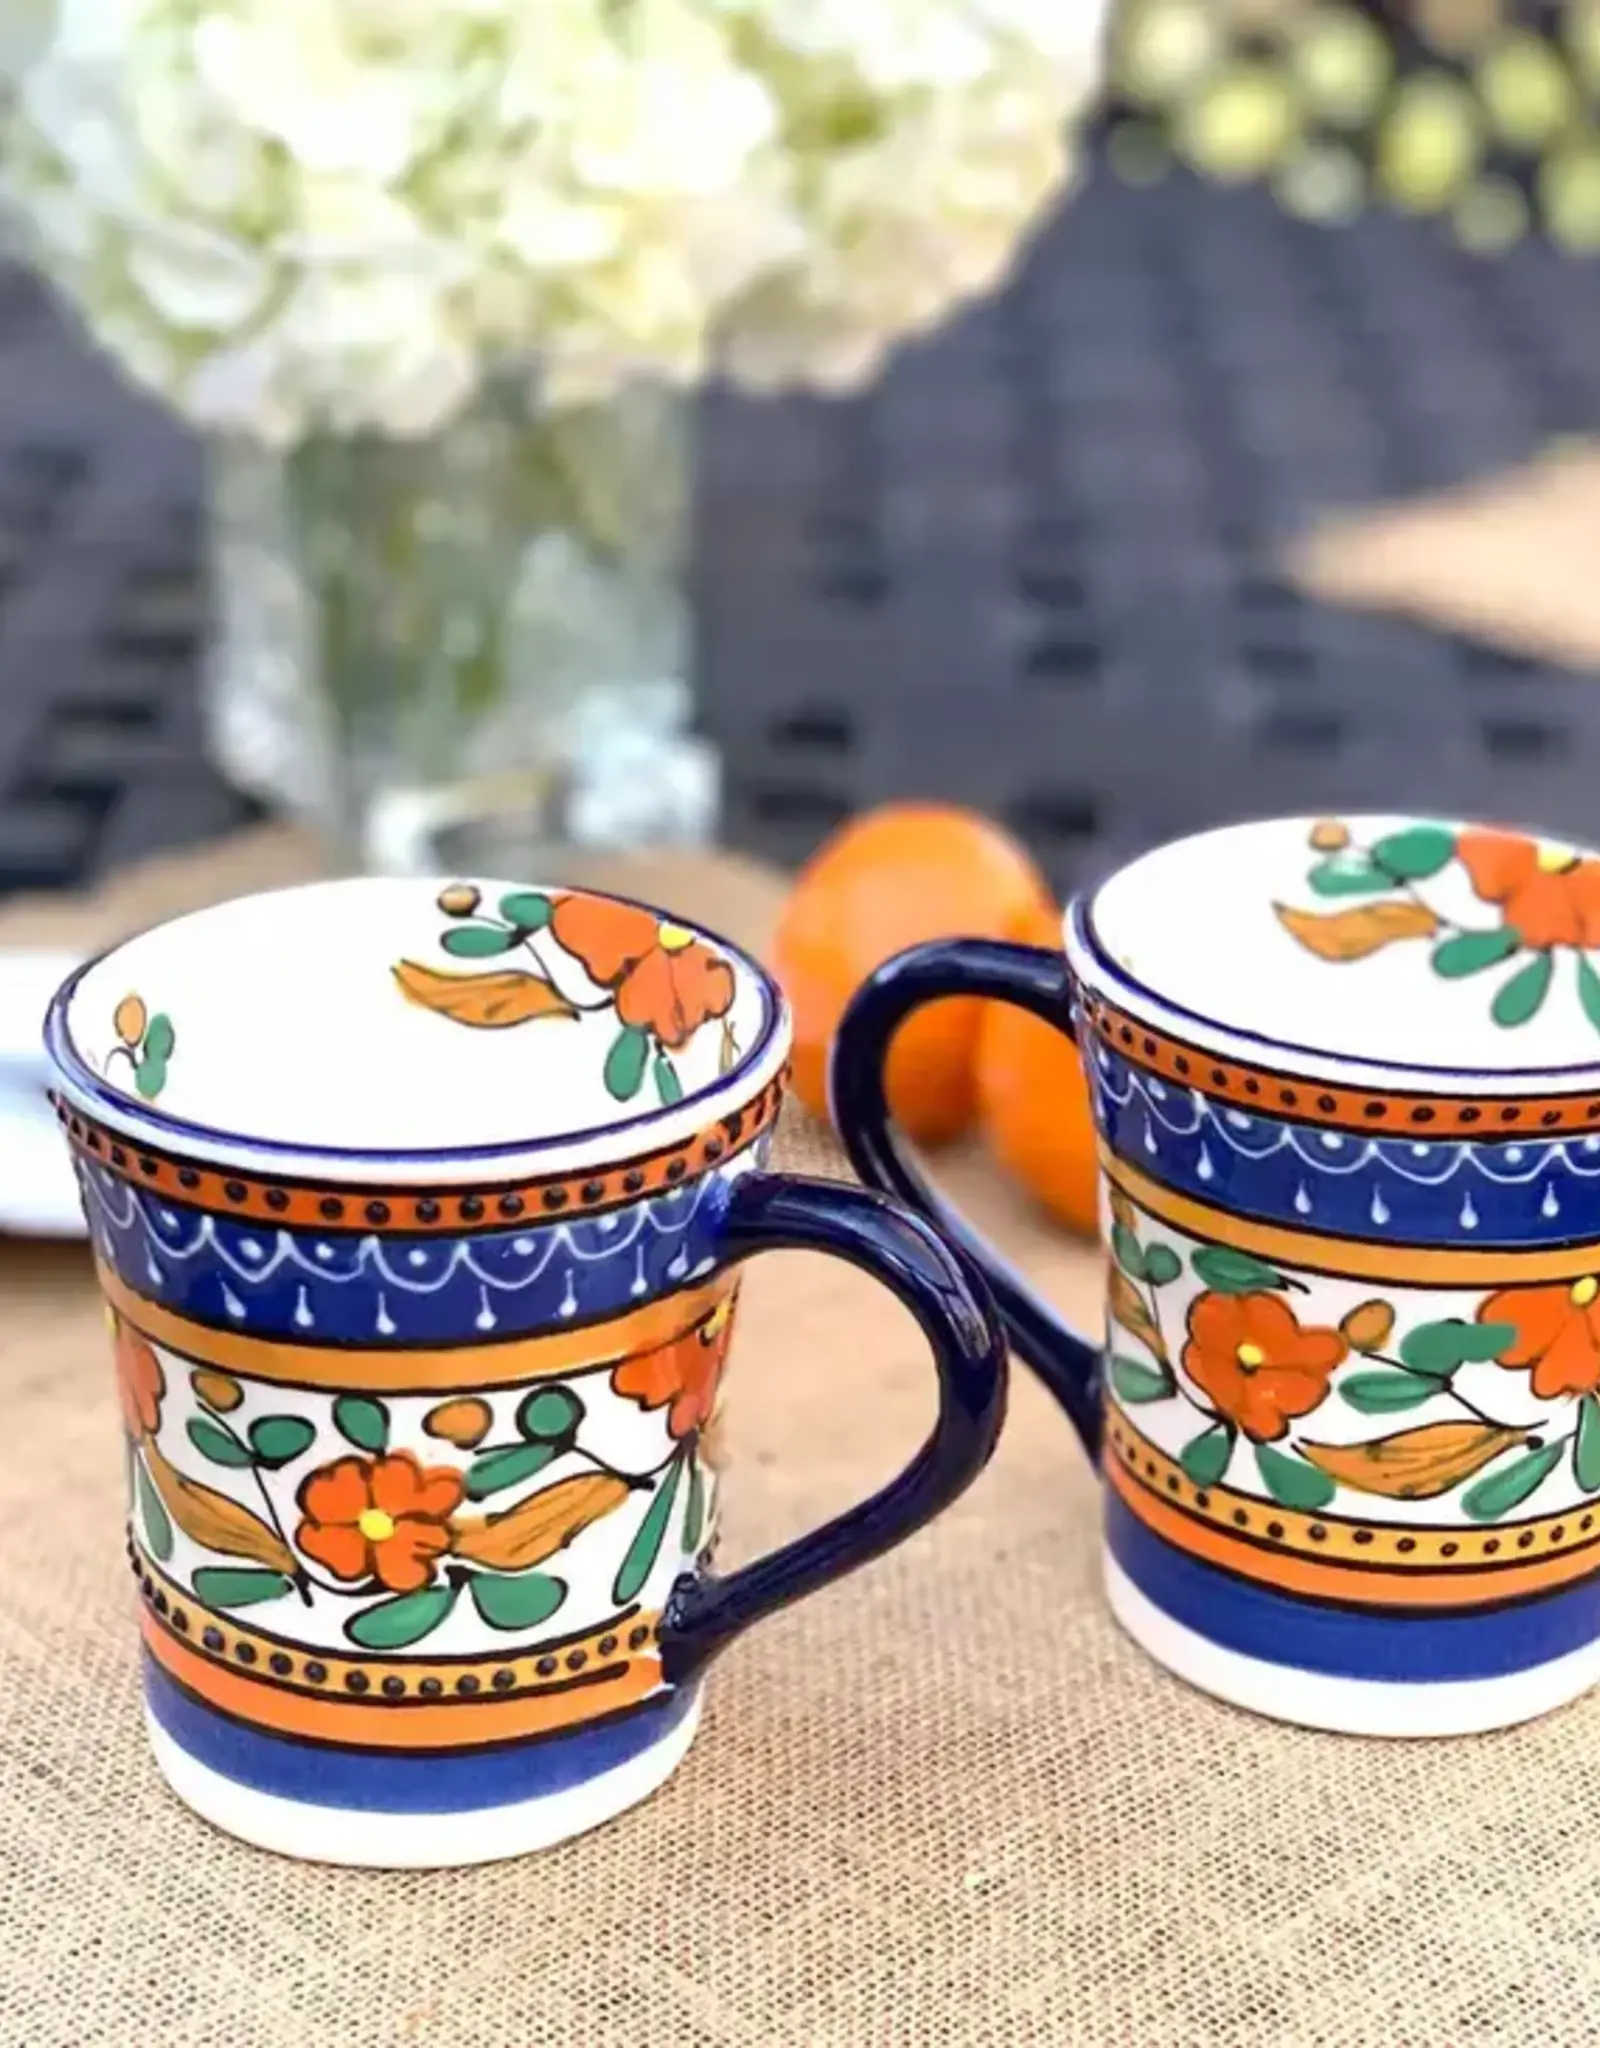 Global Crafts Orange Flower Mug